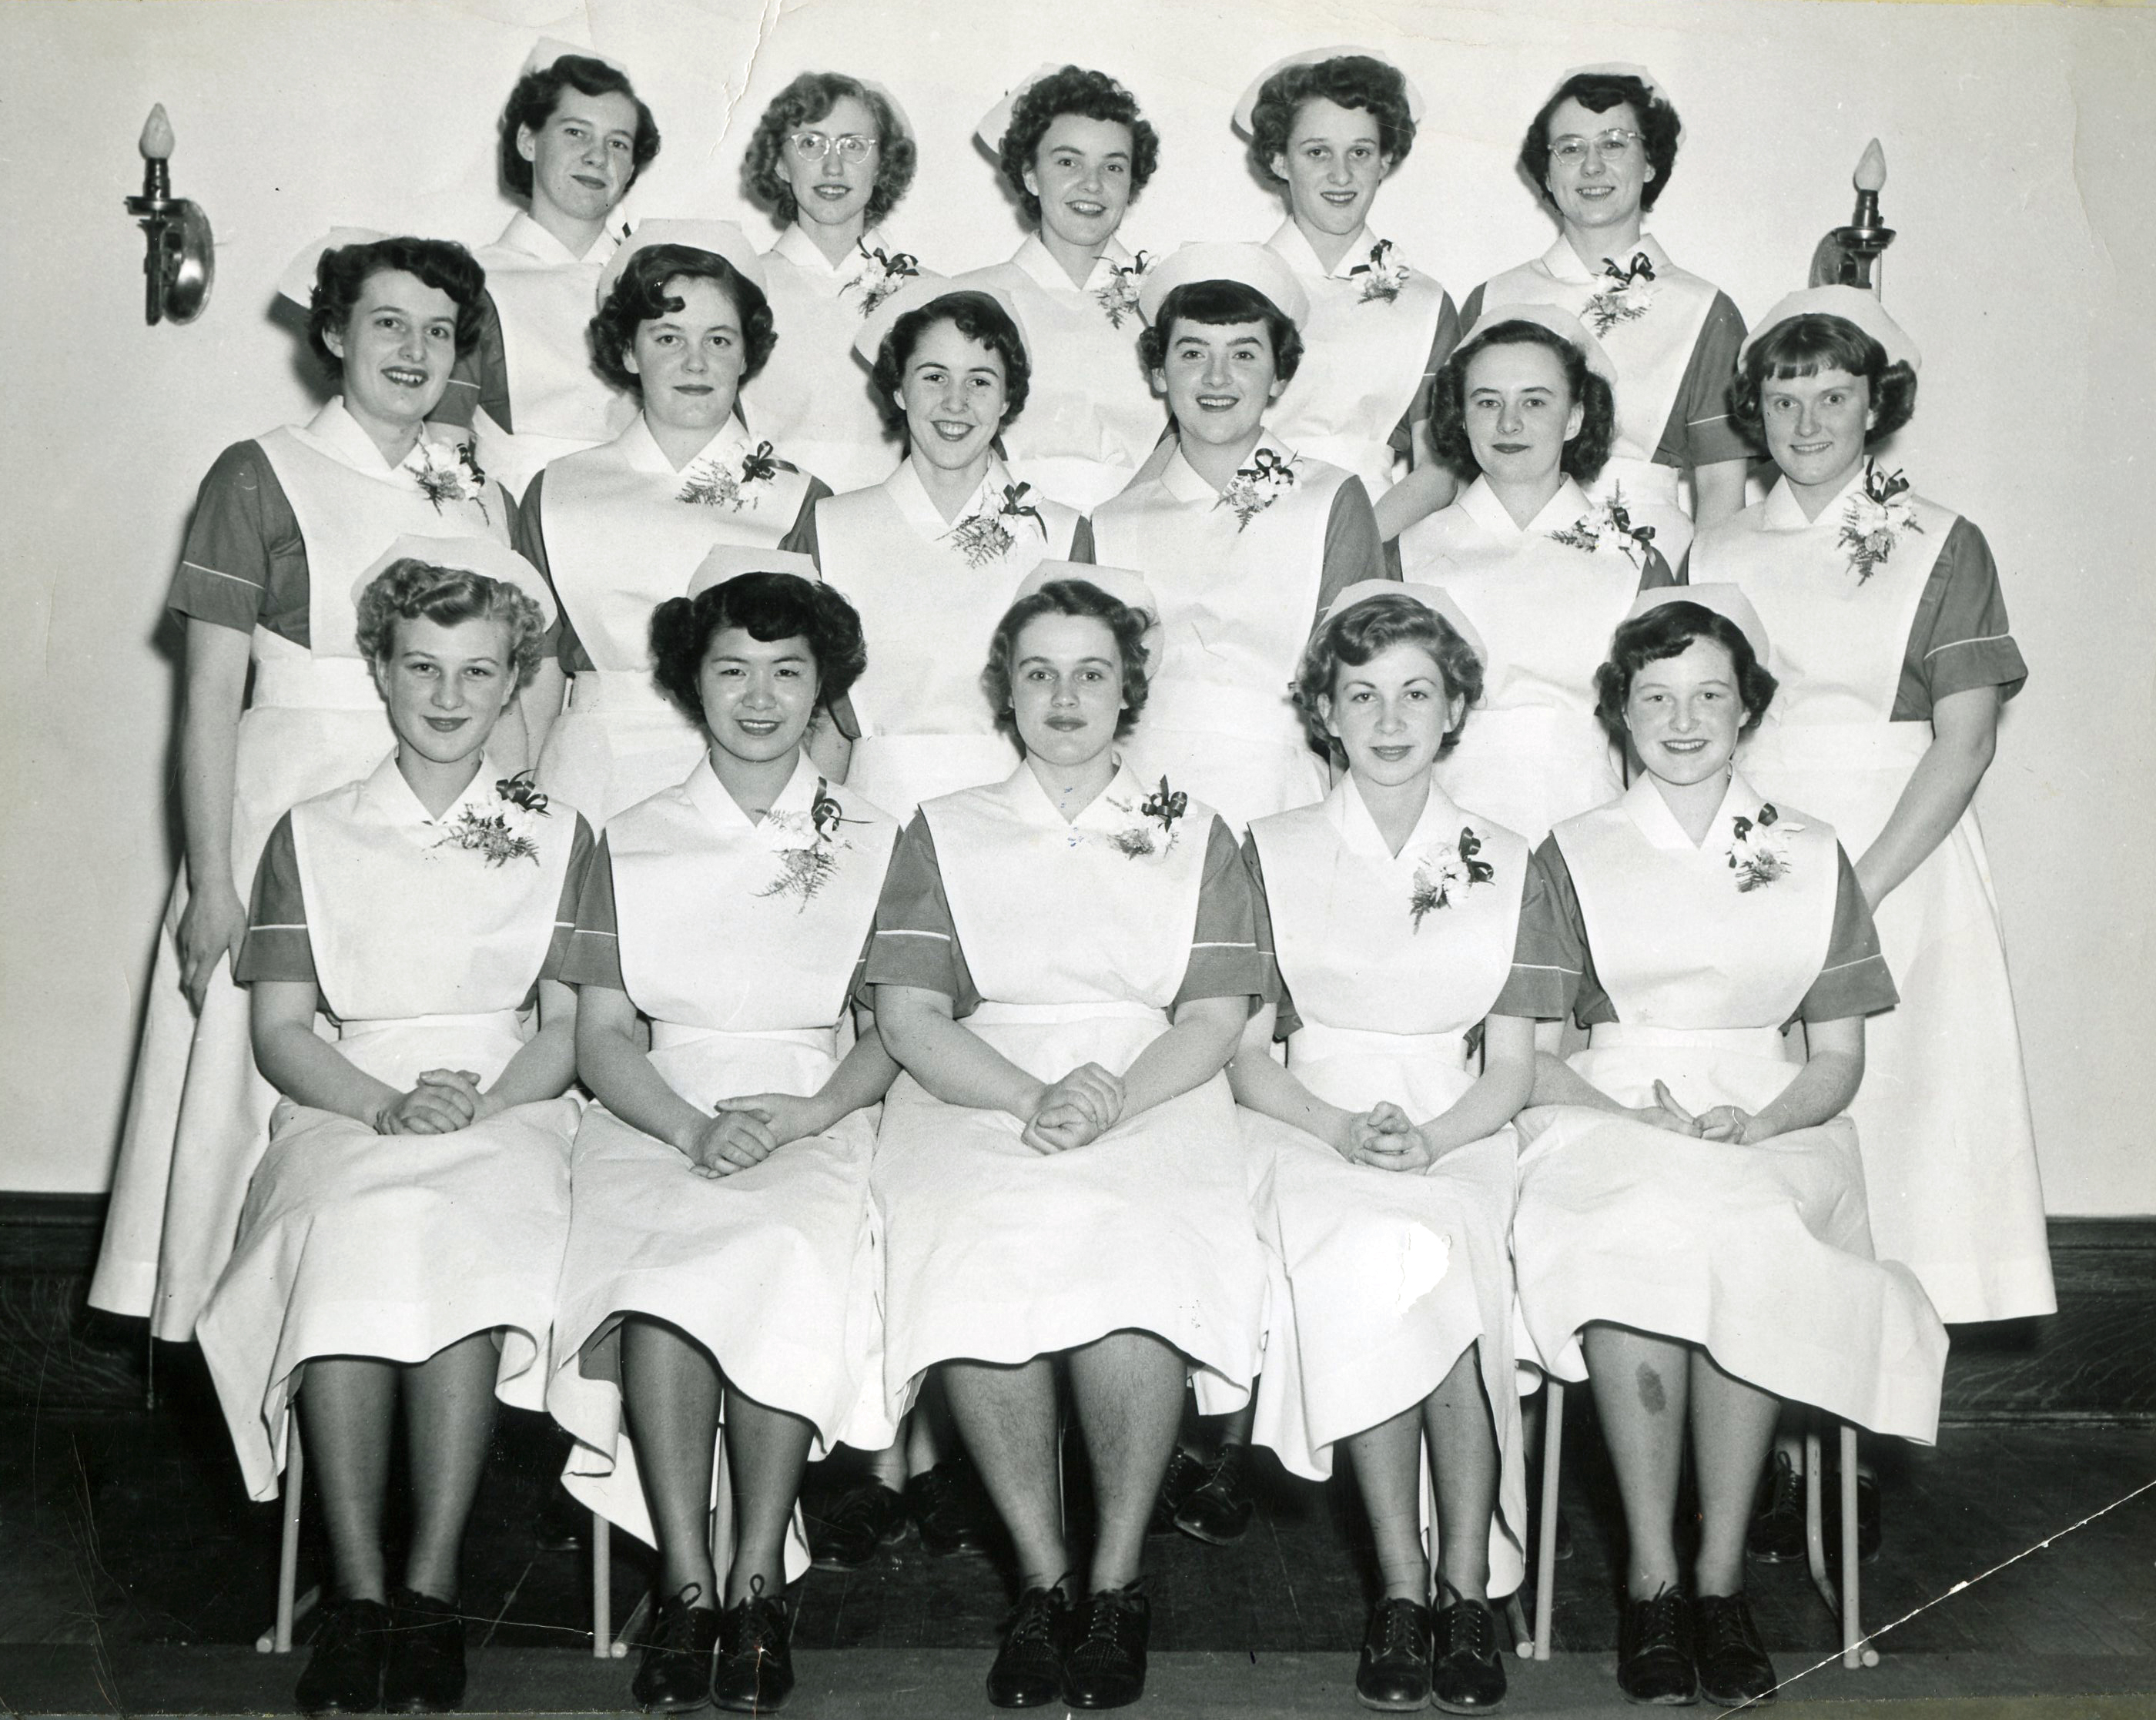 Seize femmes souriantes en uniforme d’infirmière assises ou debout pour une photo officielle.